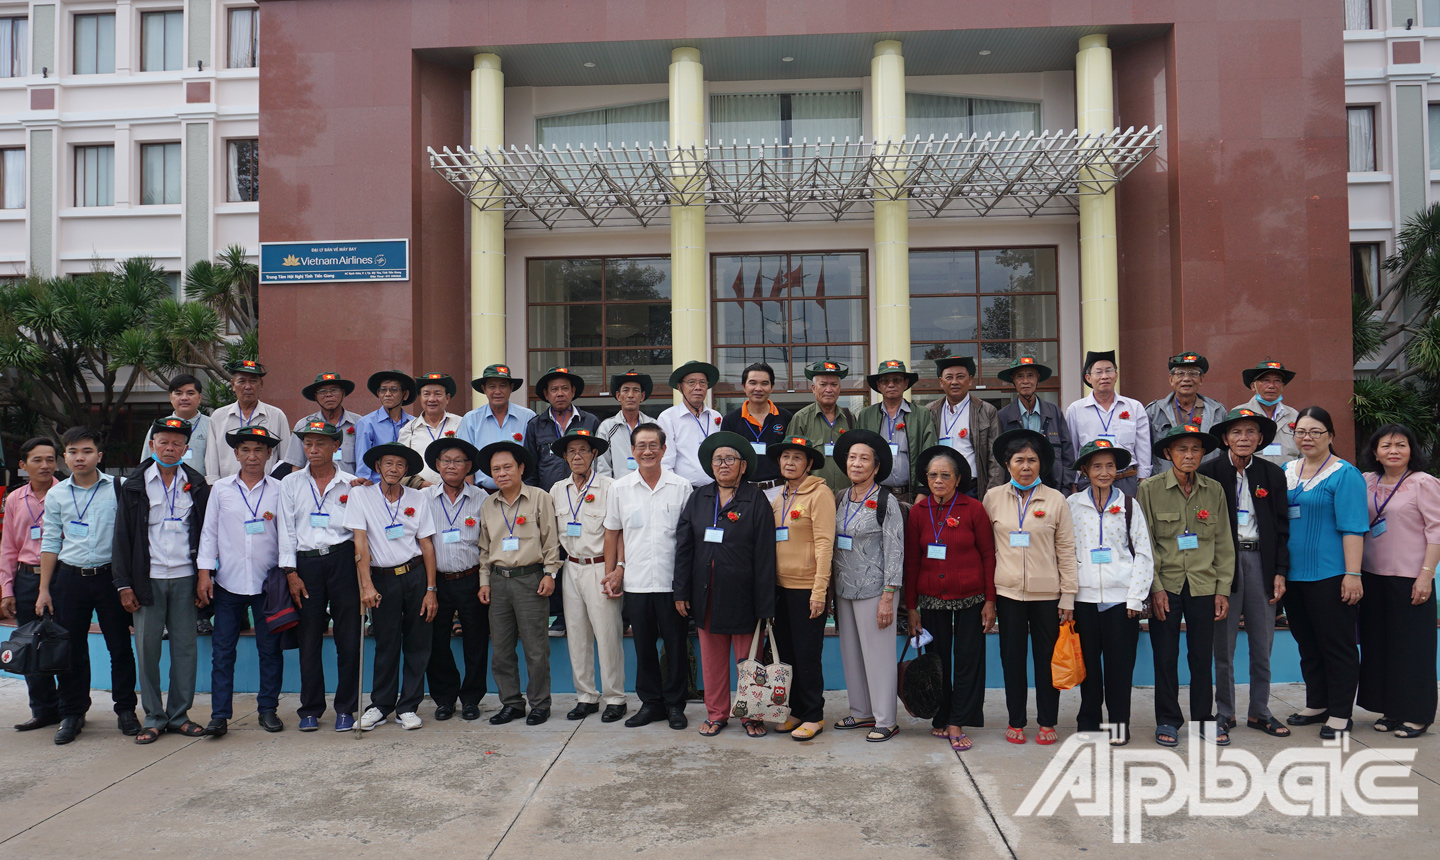 Đồng chí Phạm Minh Trí chụp ảnh lưu niệm với các thành viên trong đoàn trước khi lên đường bắt đầu chuyến tham quan thủ đô Hà Nội.